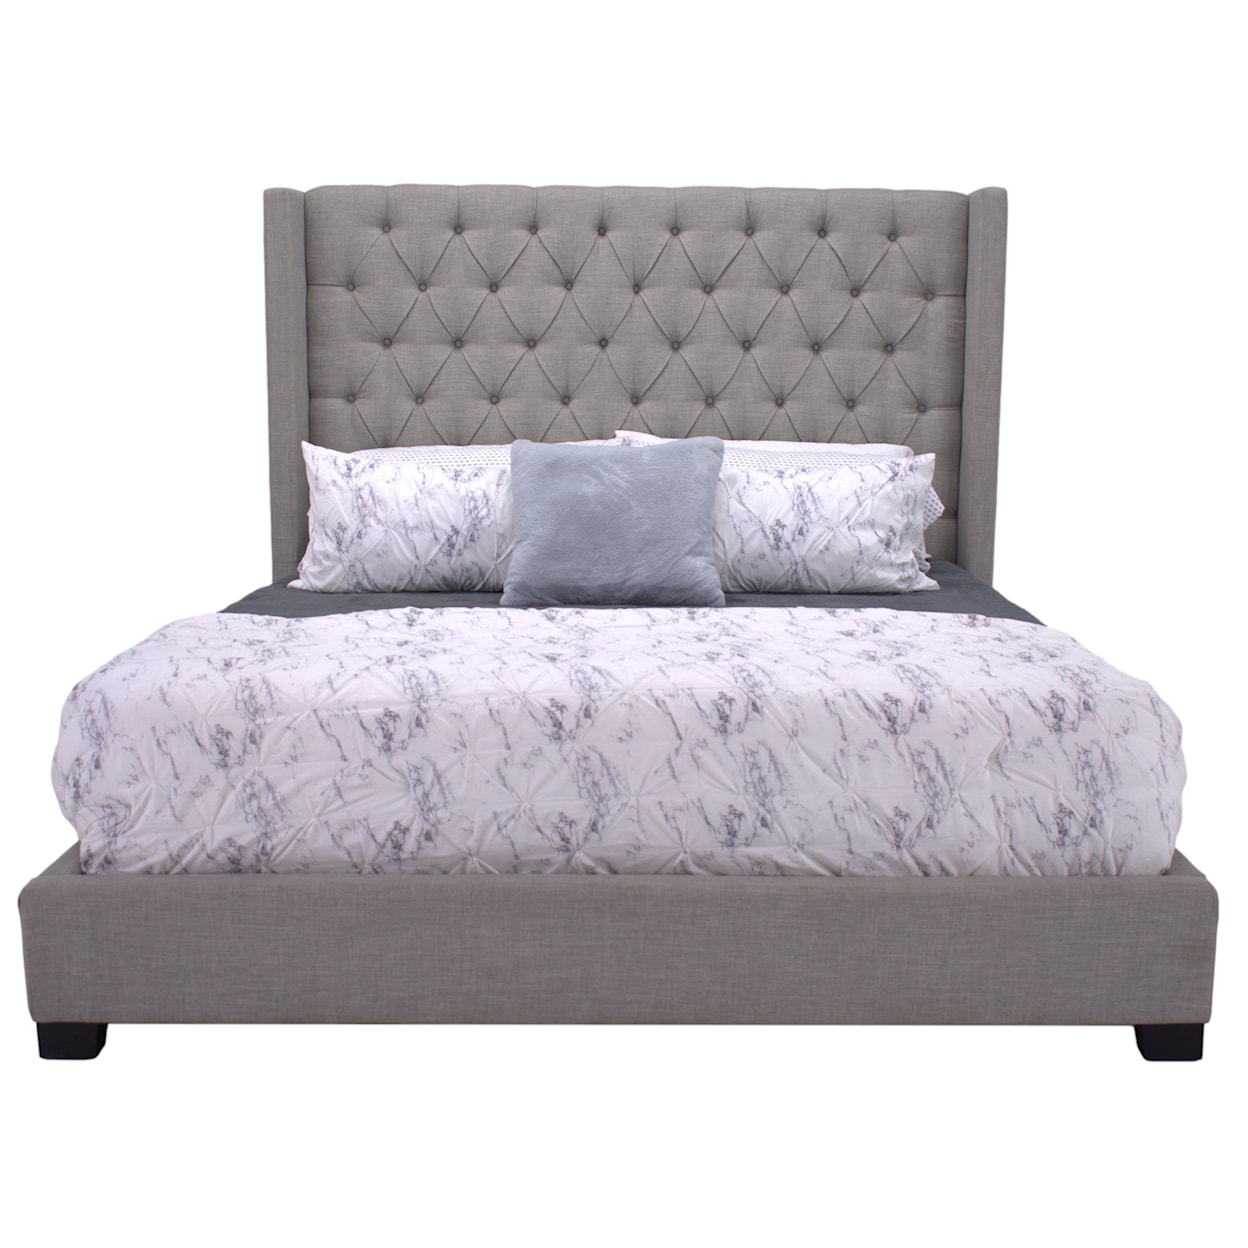 Standard Furniture Katy Katy Queen Bed